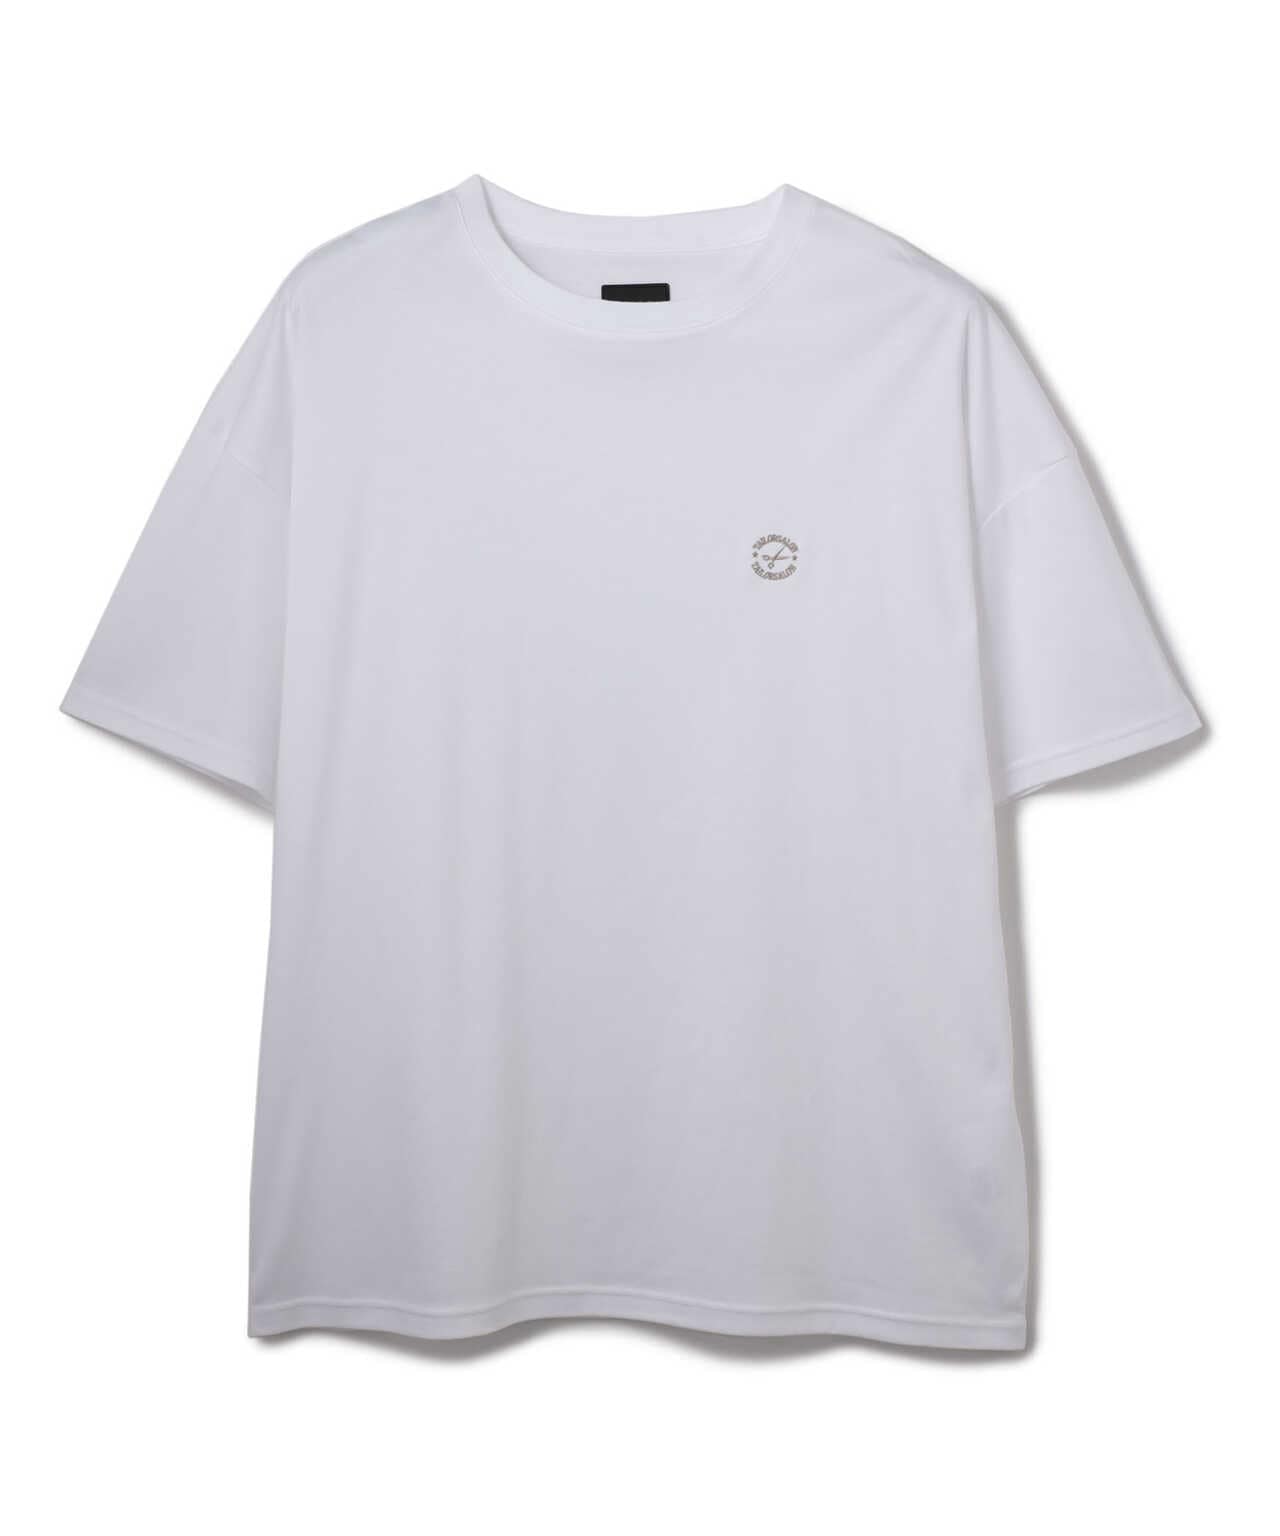 DankeSchon/ダンケシェーン/スーピマスムースTシャツ